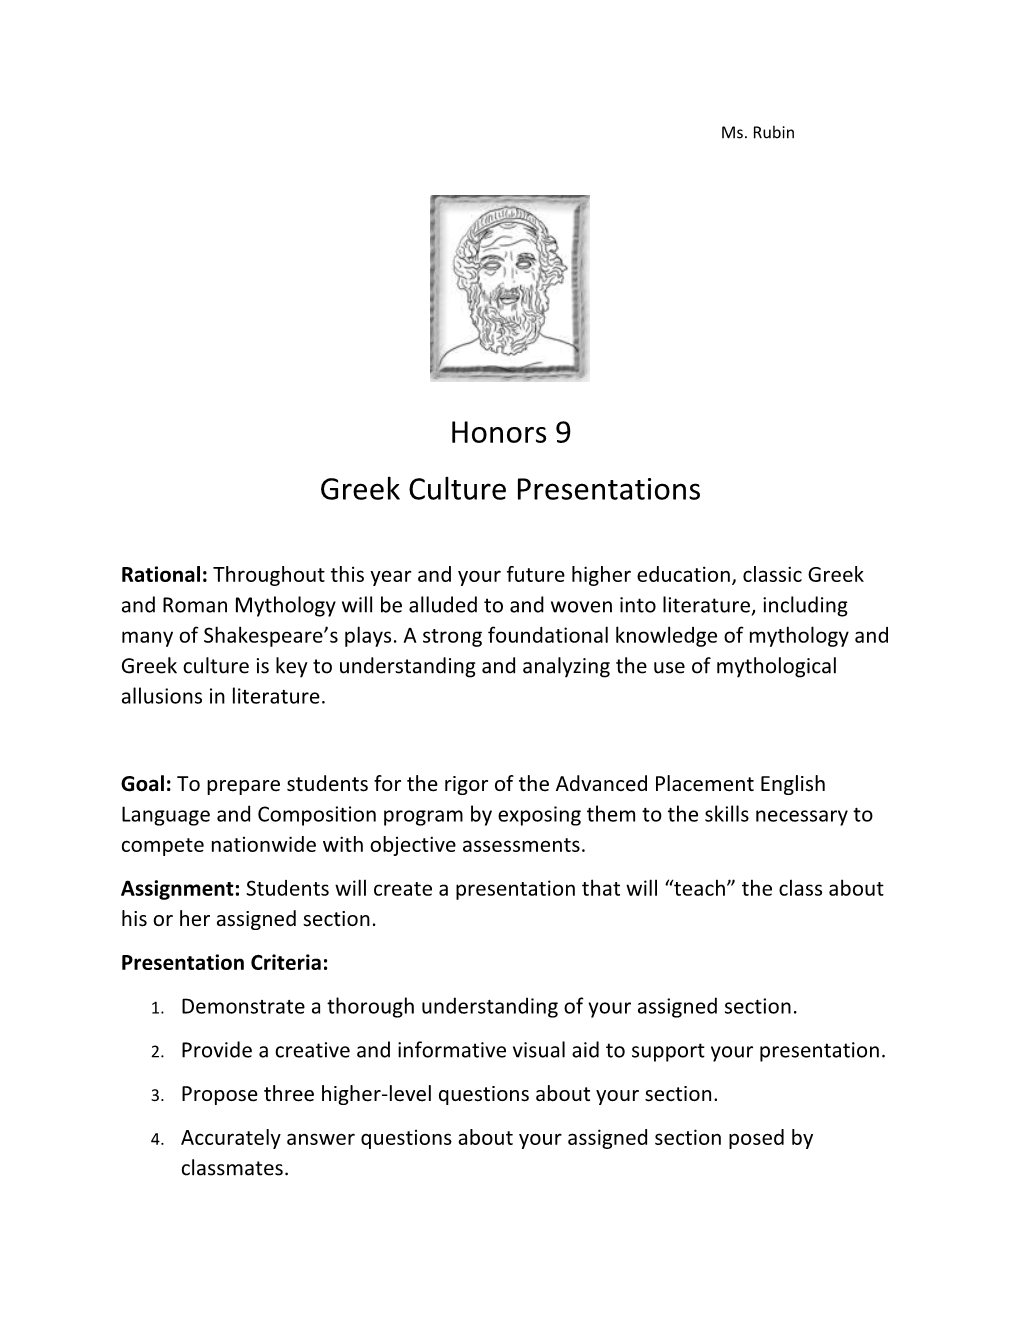 Greek Culture Presentations